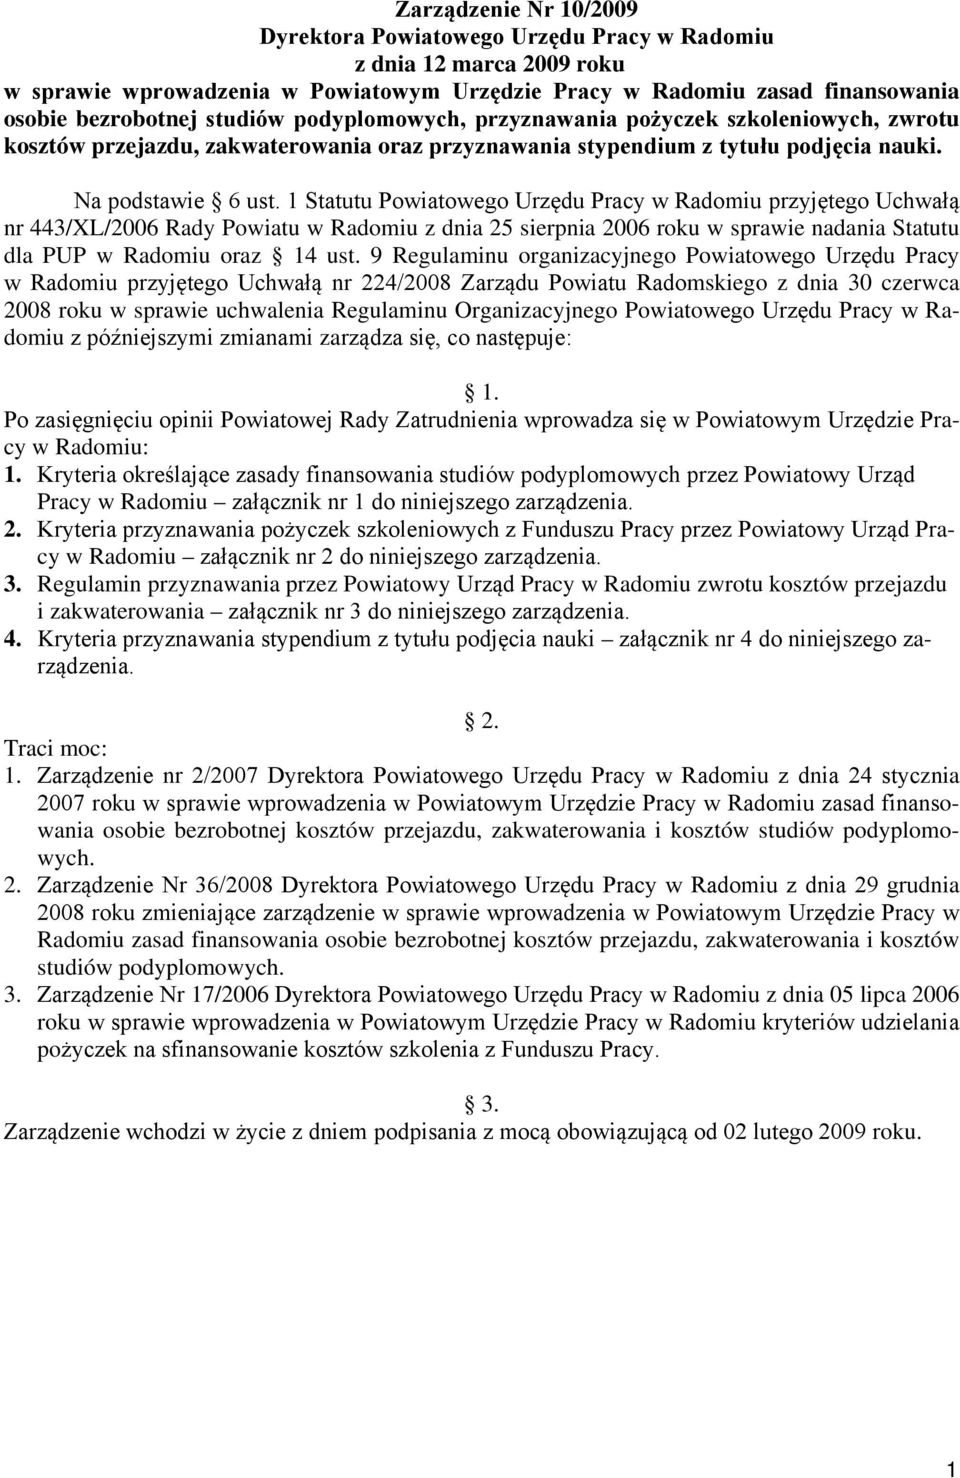 1 Statutu Powiatowego Urzędu Pracy w Radomiu przyjętego Uchwałą nr 443/XL/2006 Rady Powiatu w Radomiu z dnia 25 sierpnia 2006 roku w sprawie nadania Statutu dla PUP w Radomiu oraz 14 ust.